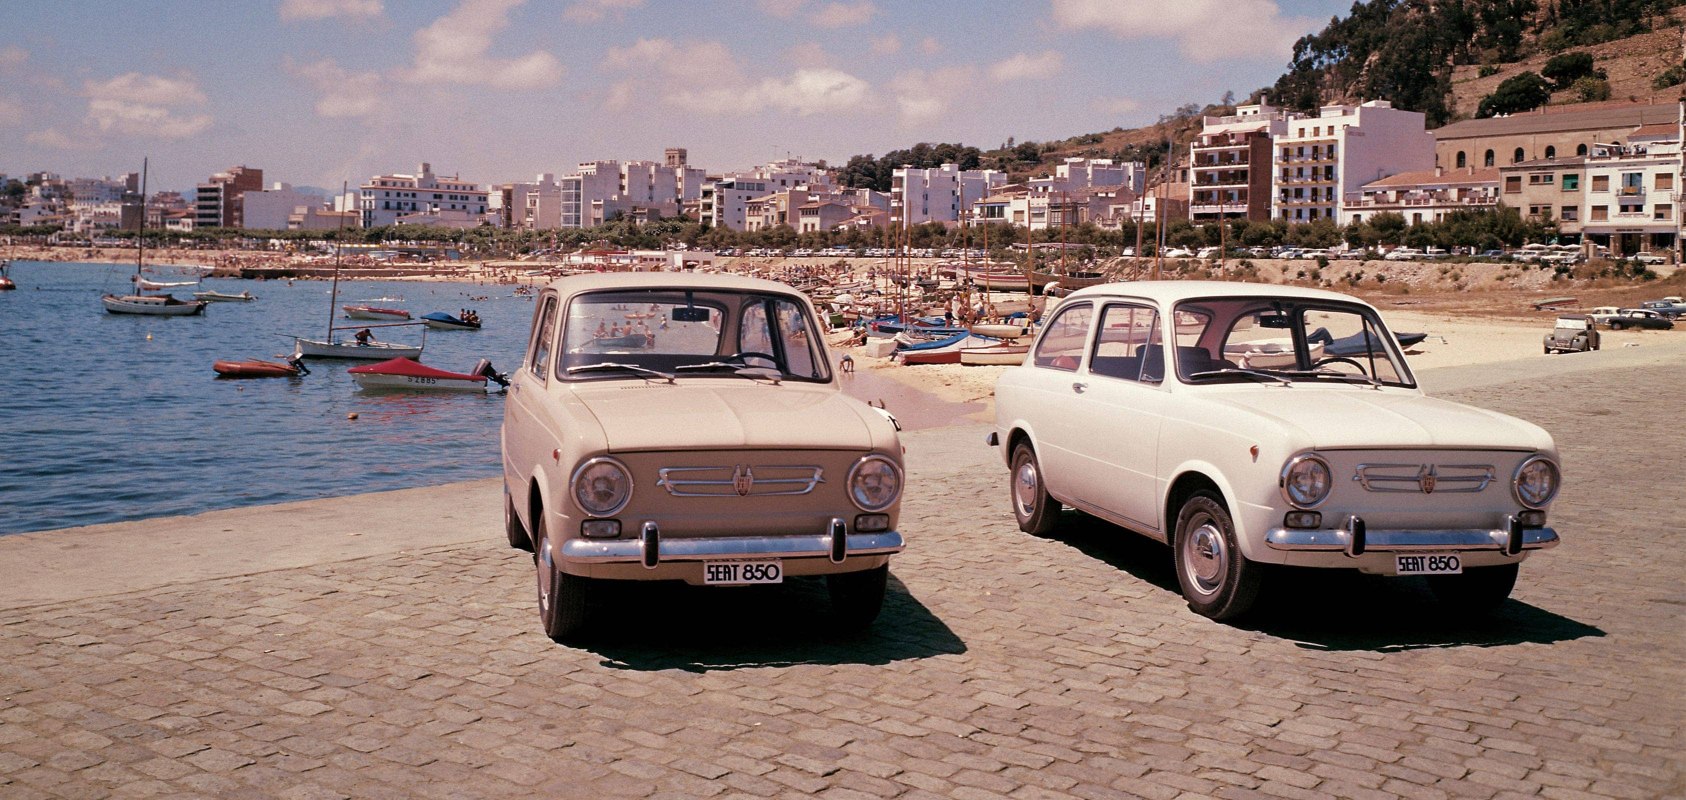 La storia del marchio SEAT: le esportazioni negli anni ’60 - Immagine dell’intestazione con modelli SEAT 850 su una spiaggia